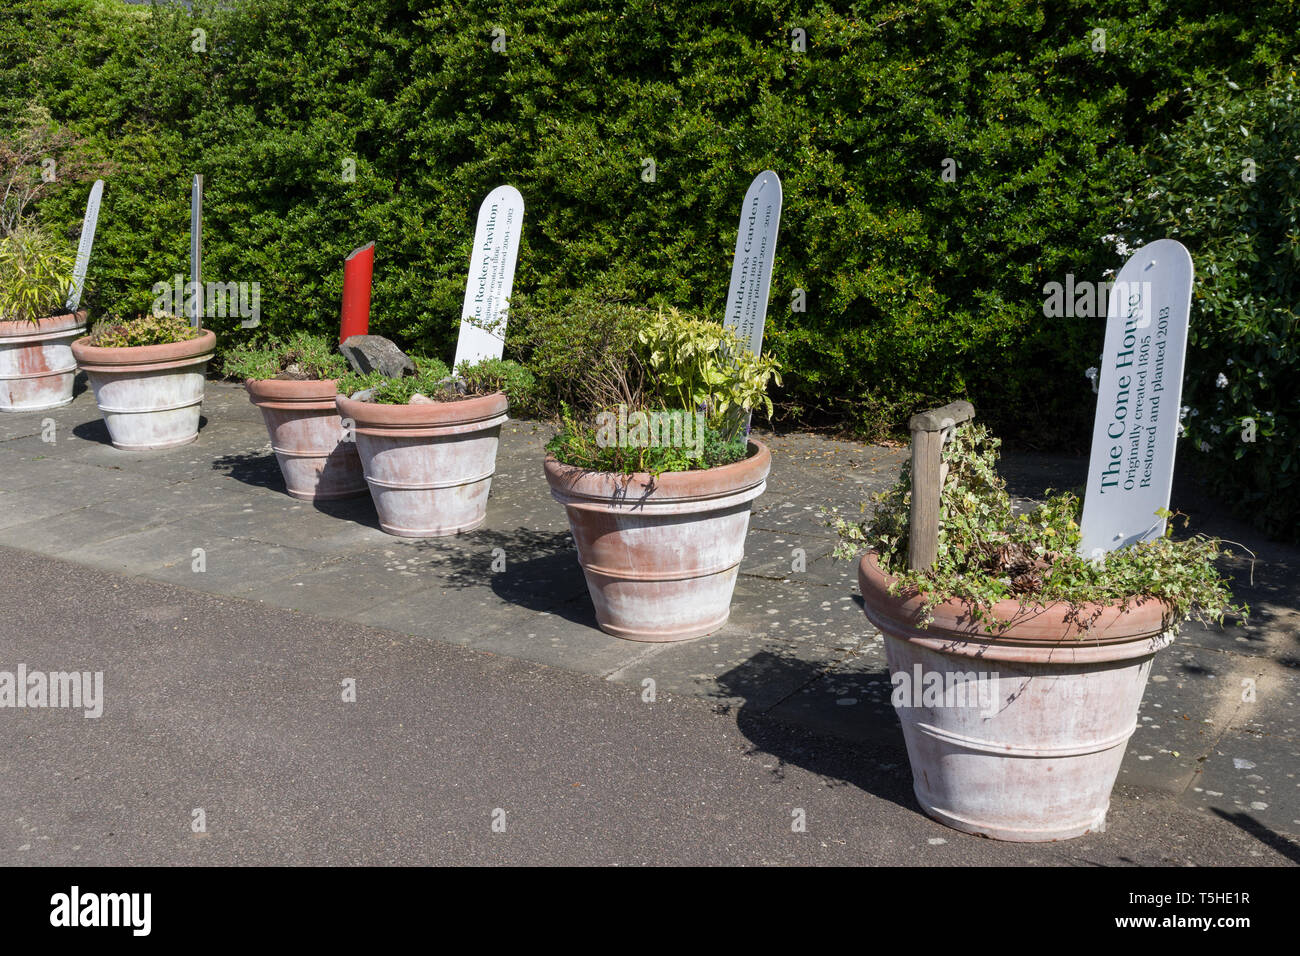 Linie der großen gepflanzt Terracotta Töpfen mit Informationen Etiketten, Woburn Abbey Gardens, Bedfordshire, Großbritannien Stockfoto